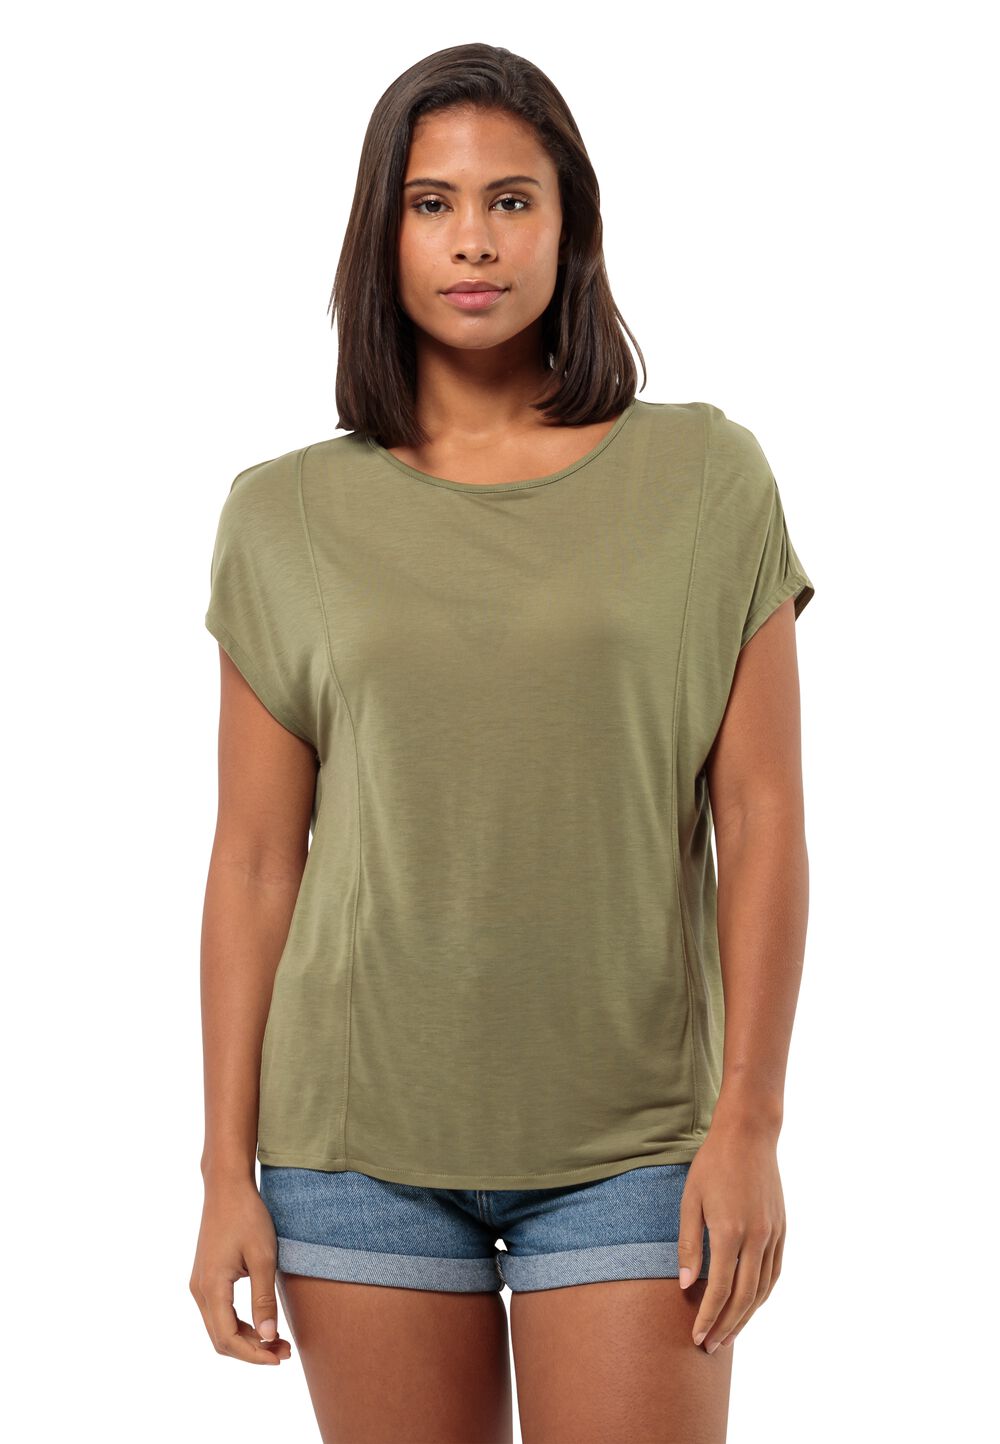 Jack Wolfskin Mola T-Shirt Women T-shirt Dames XL bruin bay leaf